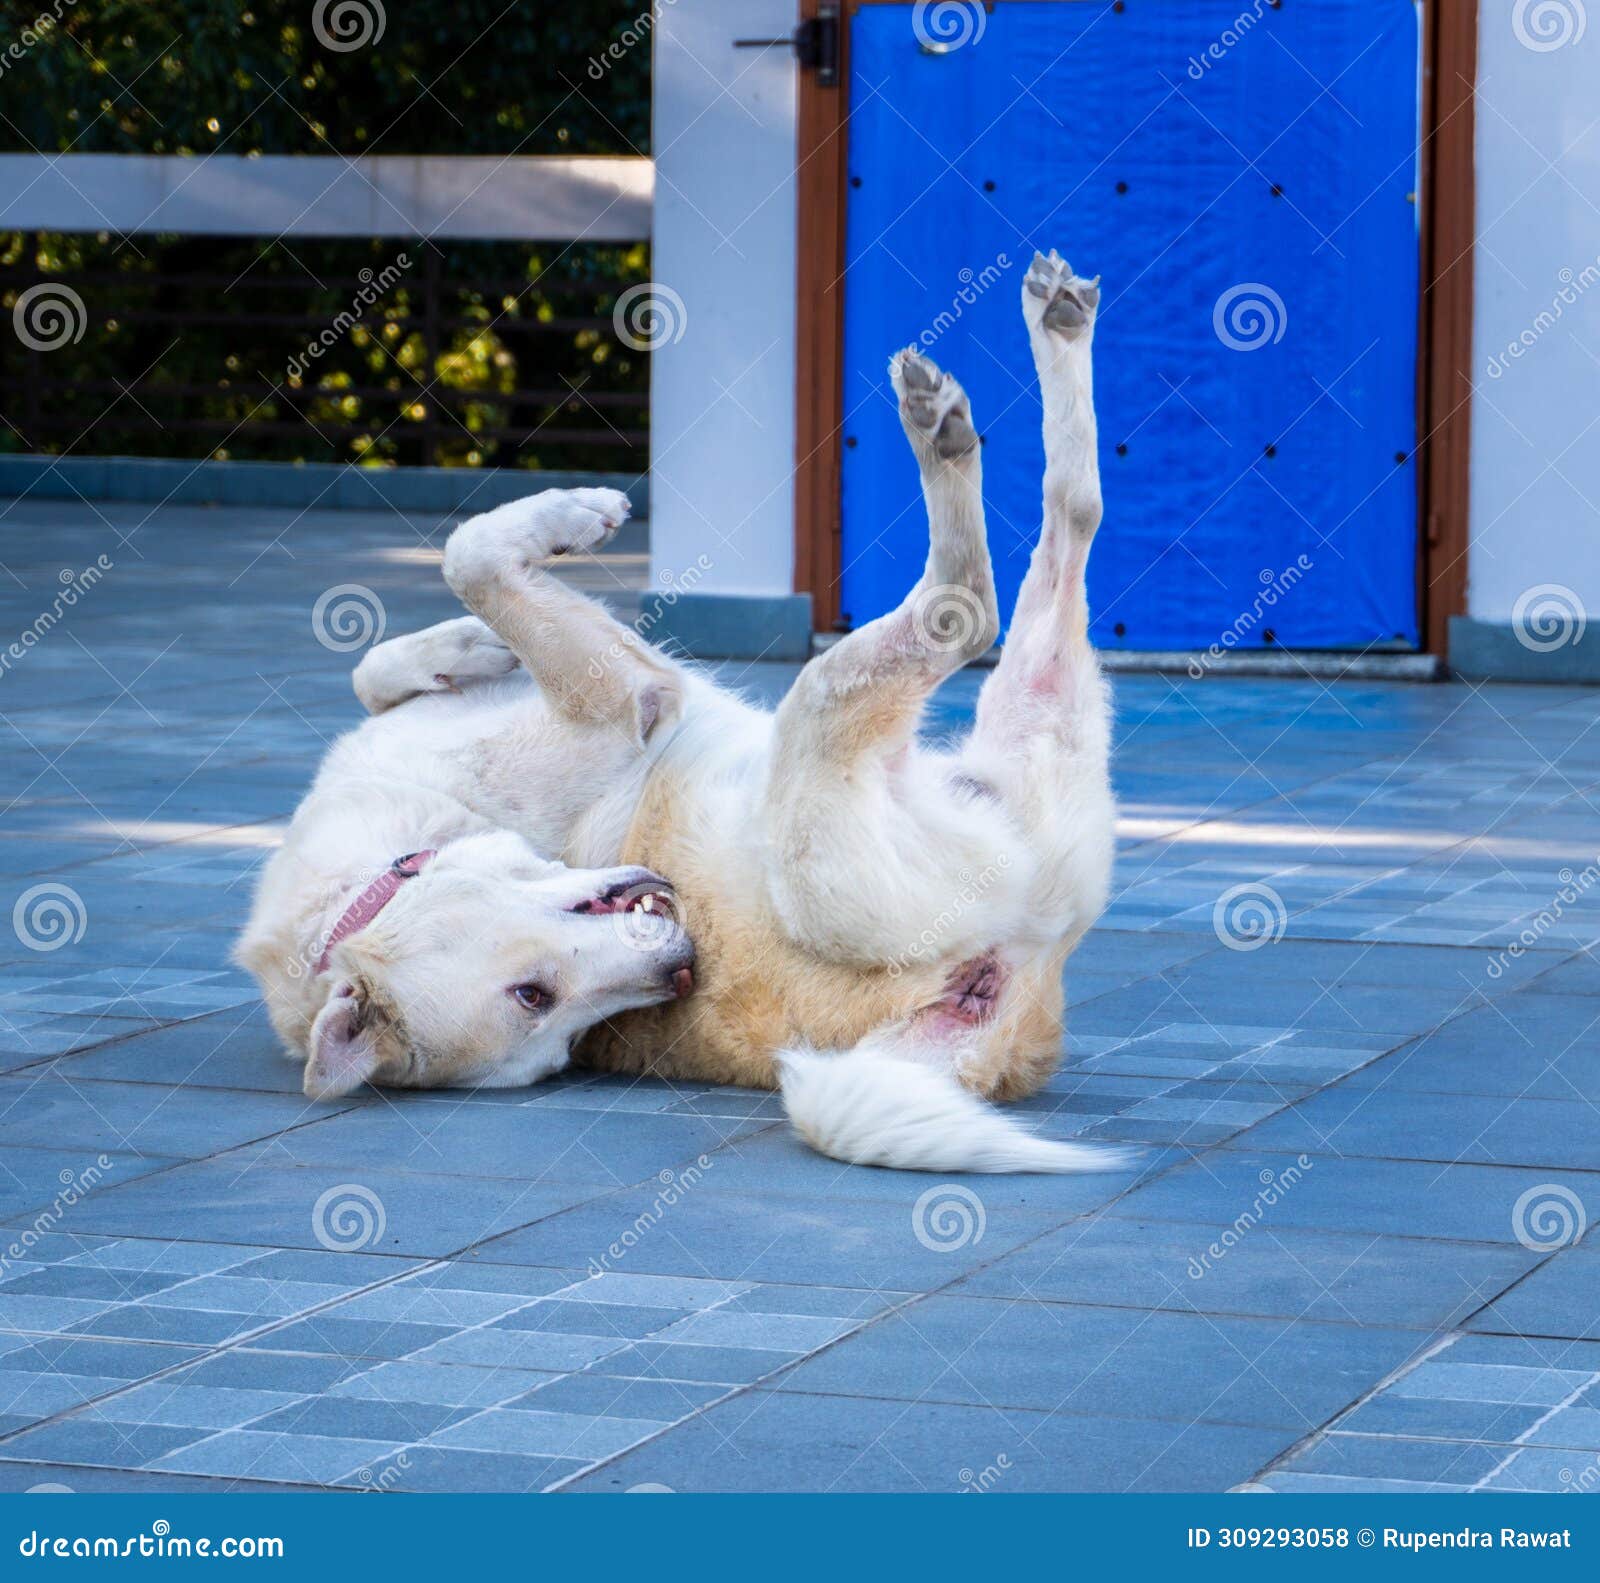 himalayan shepherd dog: playful belly-up antics - joyful pet comedy, india